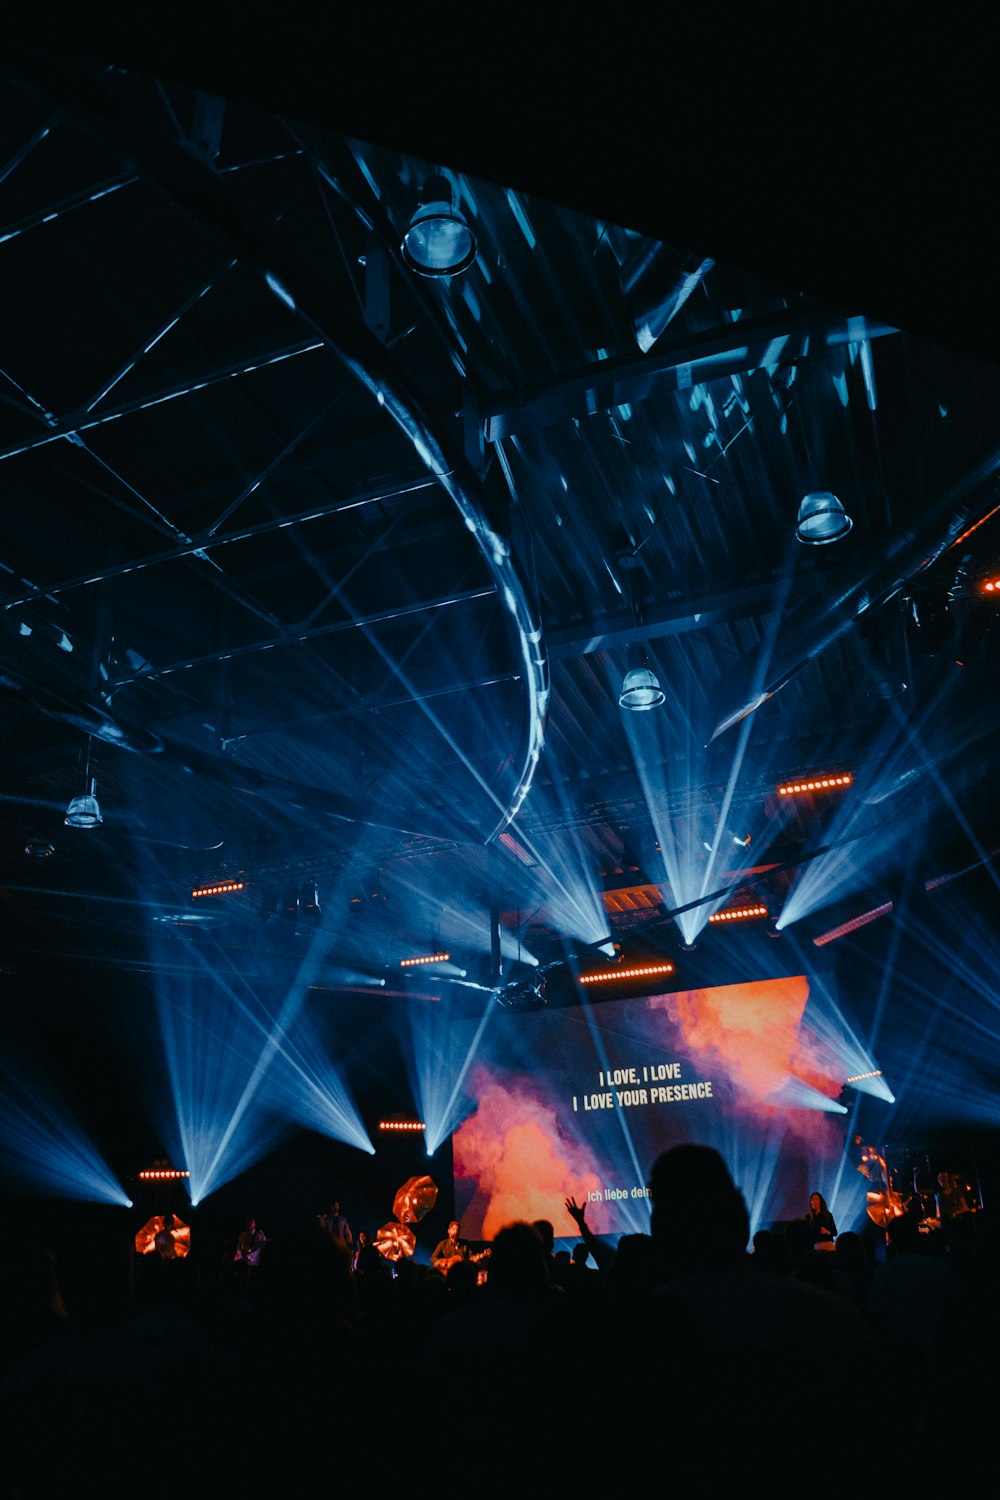 Écran de projection affichant du texte sur scène avec des lumières